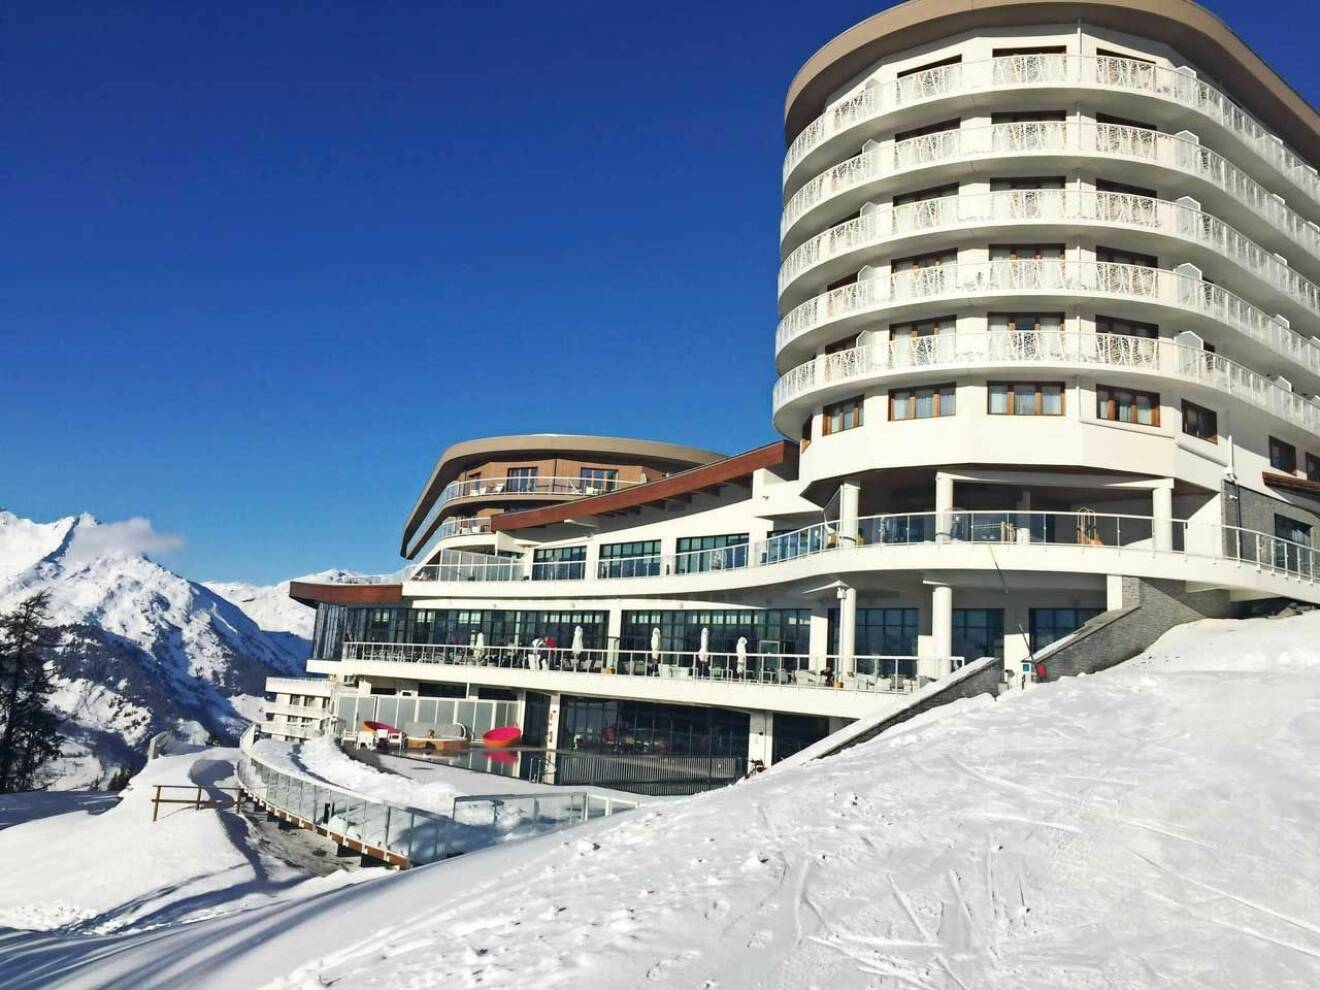 Närmare ski in ski out-känsla och läge får man leta efter. Mitt i pisten ligger Club Meds nya hotell Les Arcs Panorama.